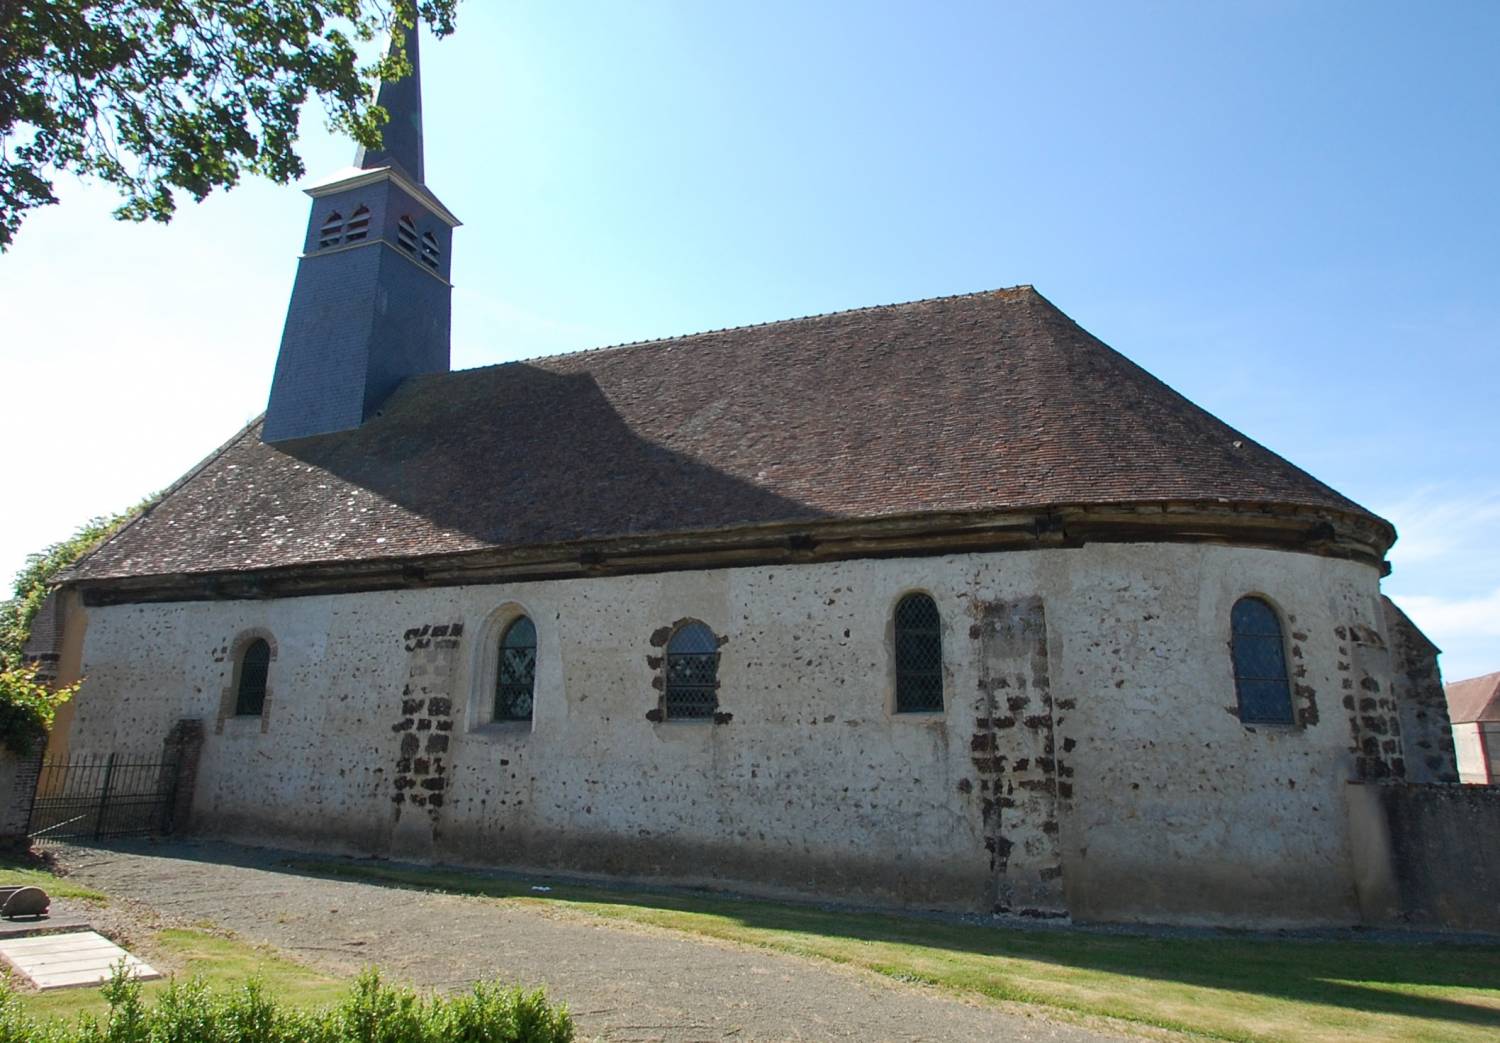 église sainte-Anne, la Saucelle (28) - La Sauvegarde de l'Art Français